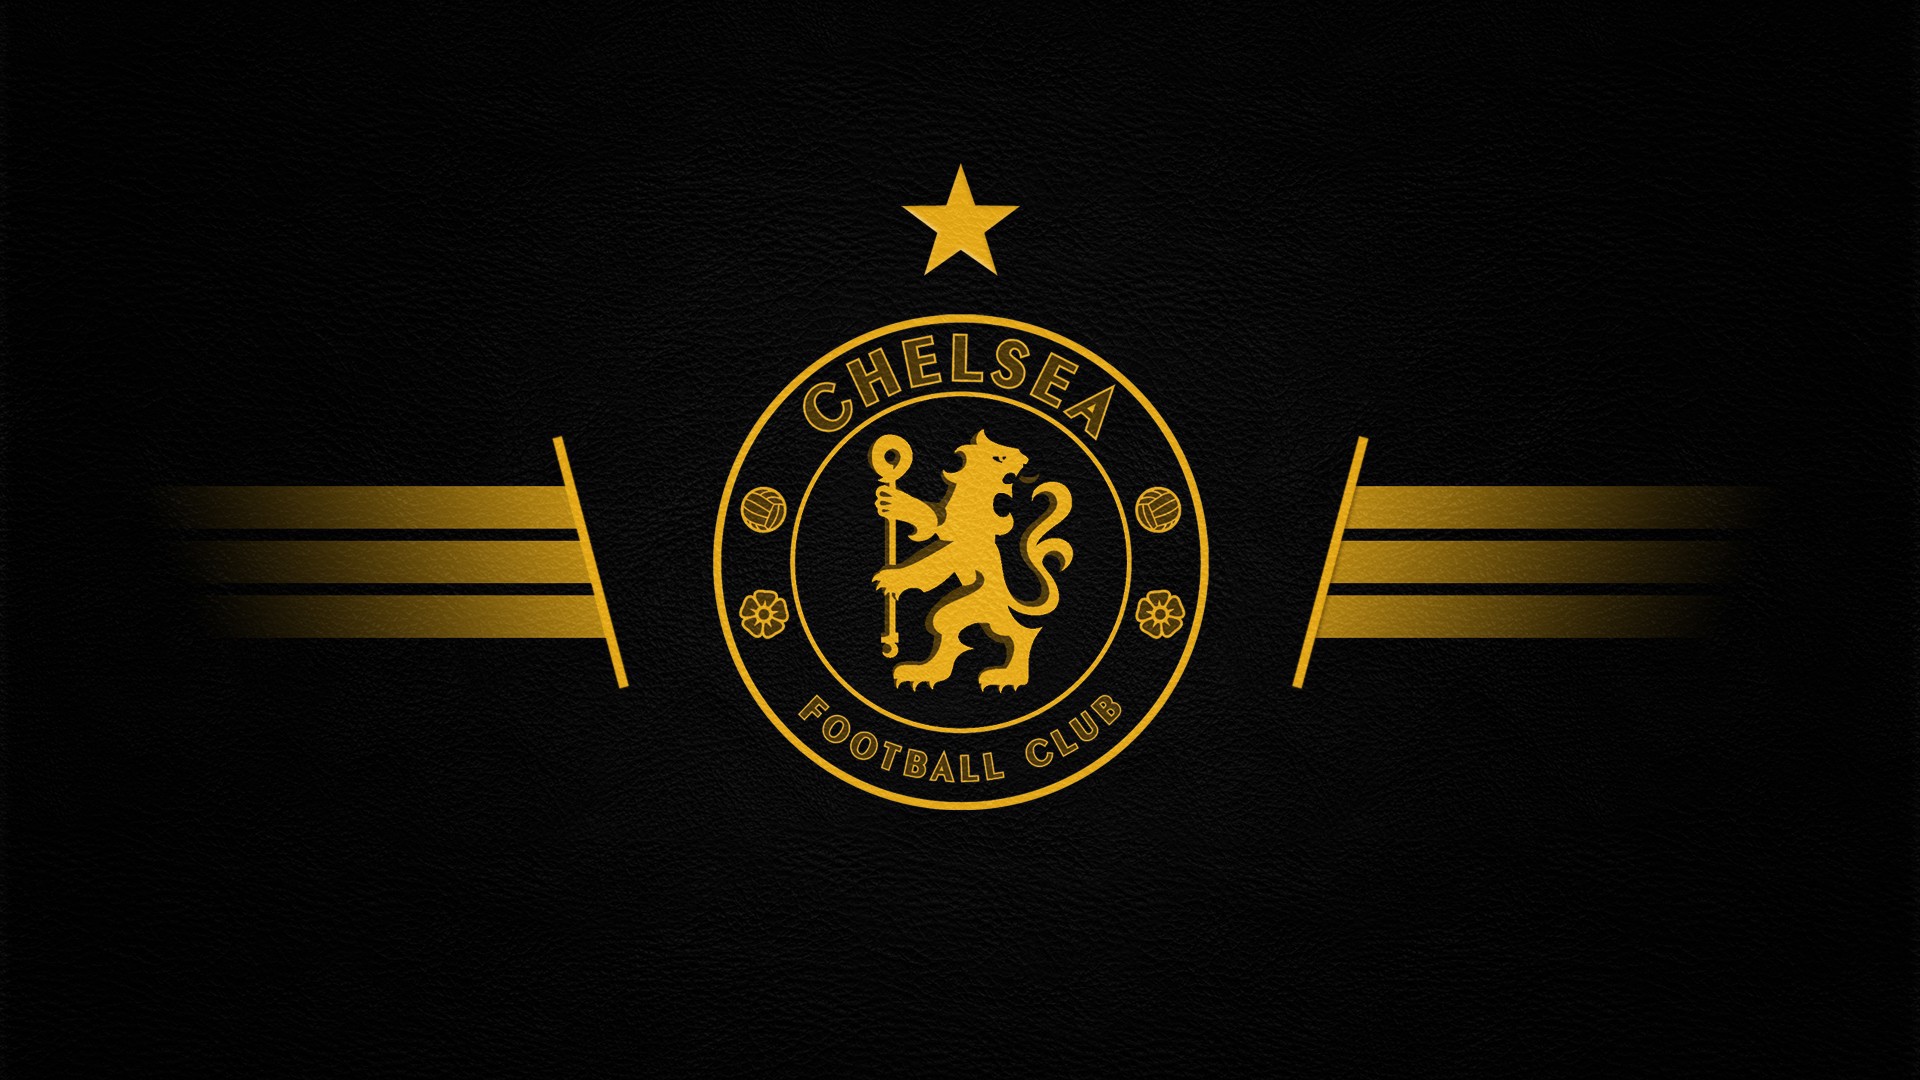 Zastaki.com - Футбольный клуб Челси, логотип  золотой на сером